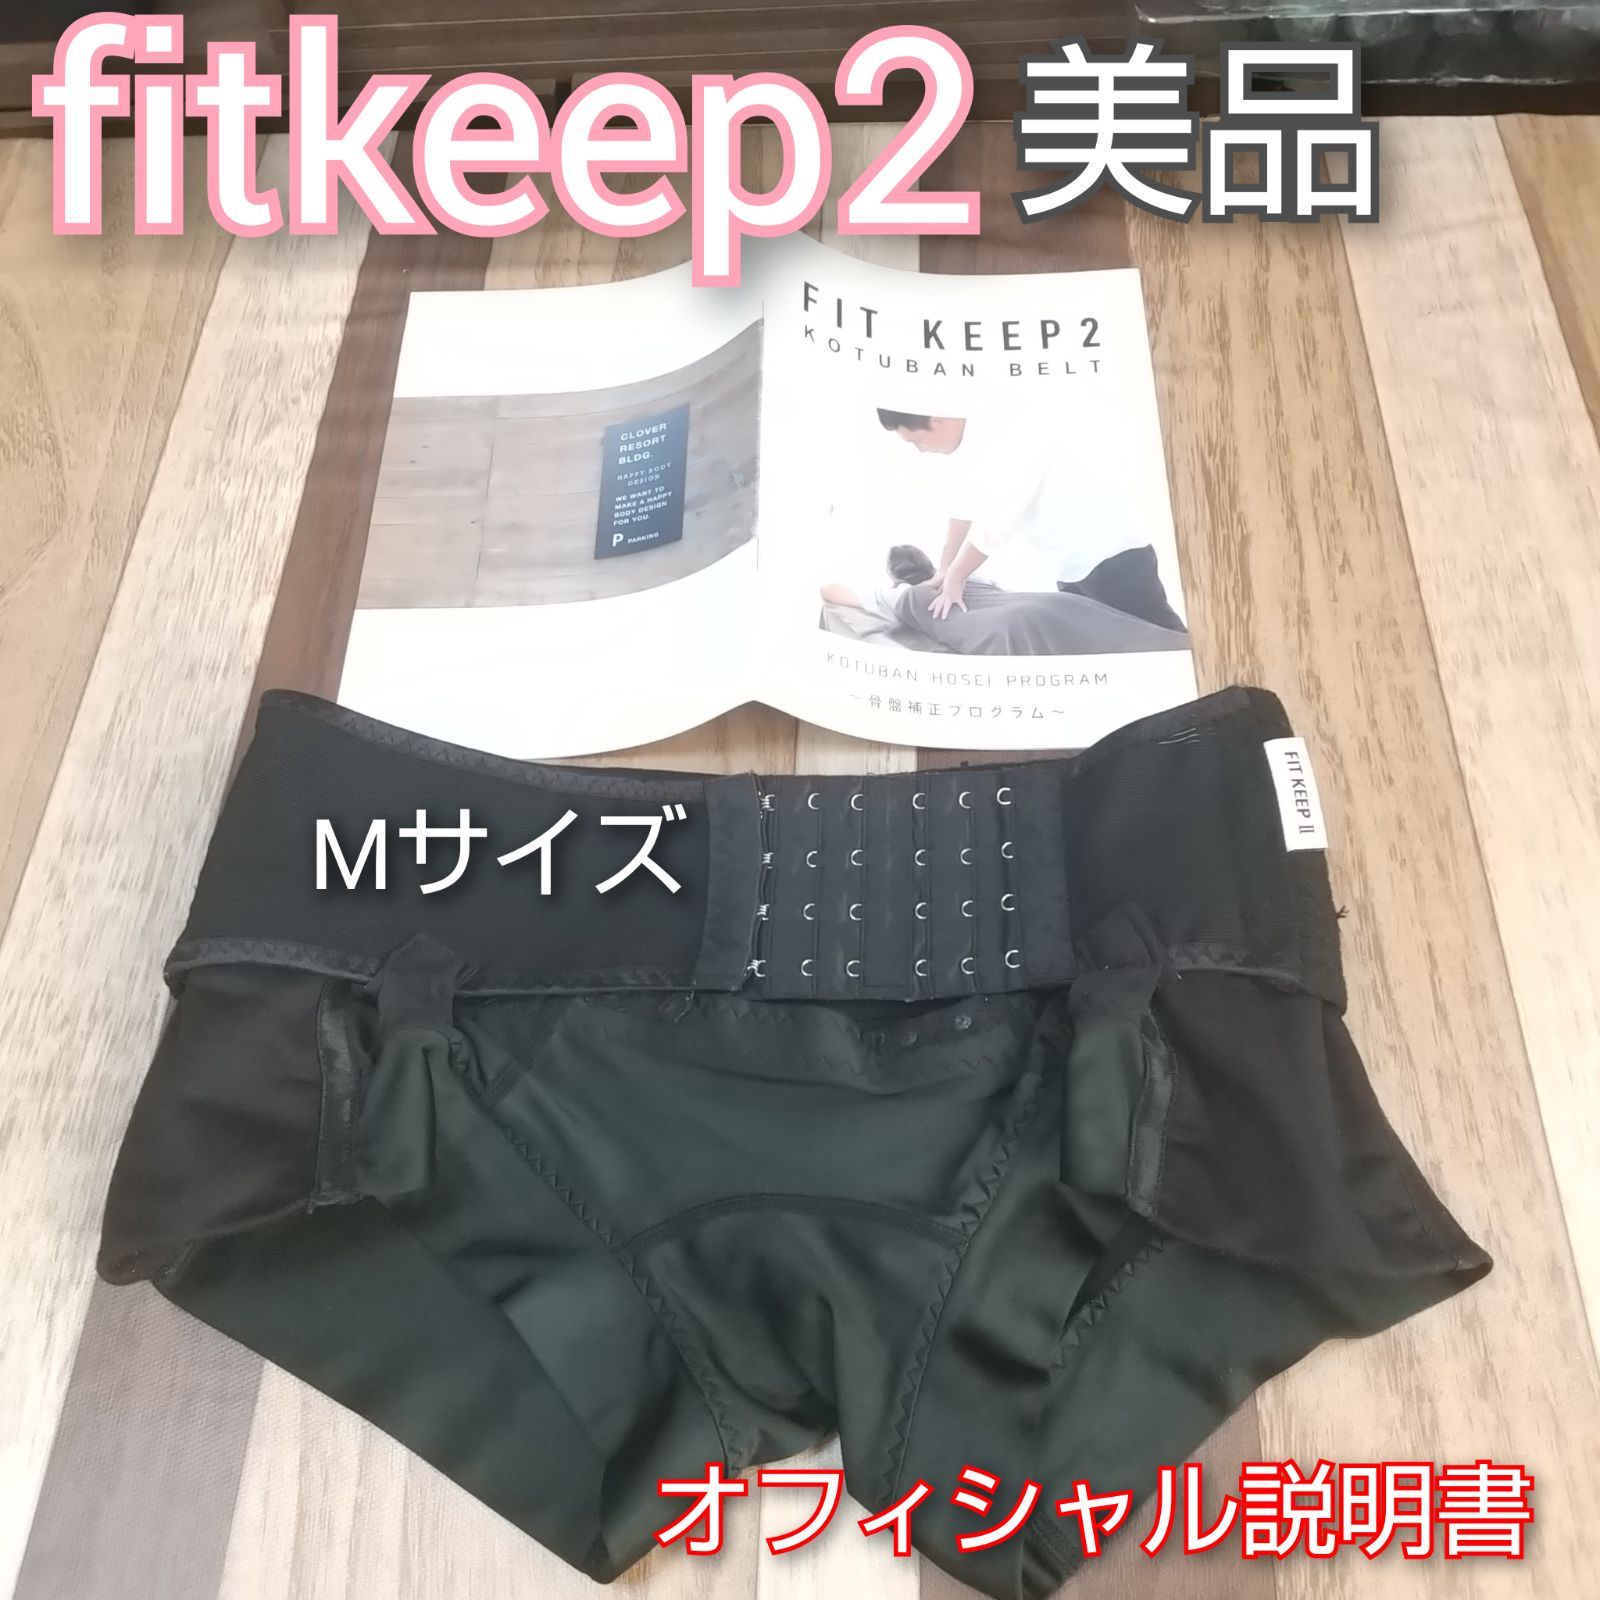 FITKEEP2 骨盤ベルト Mサイズ - マタニティ